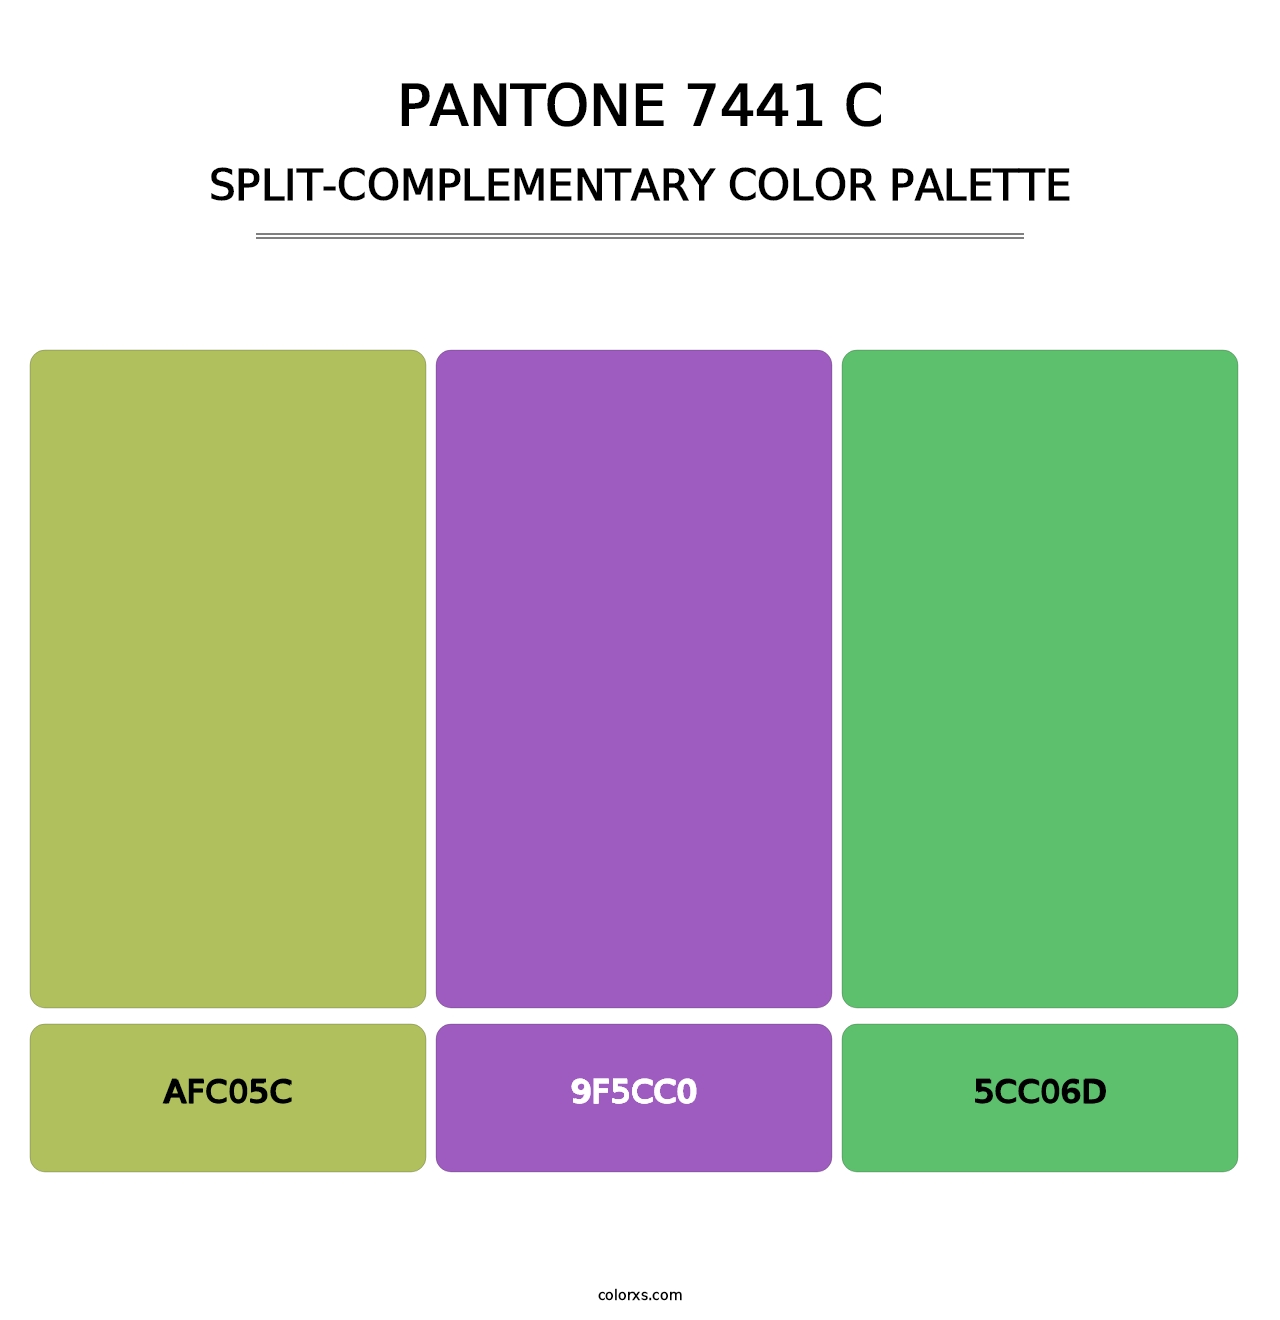 PANTONE 7441 C - Split-Complementary Color Palette